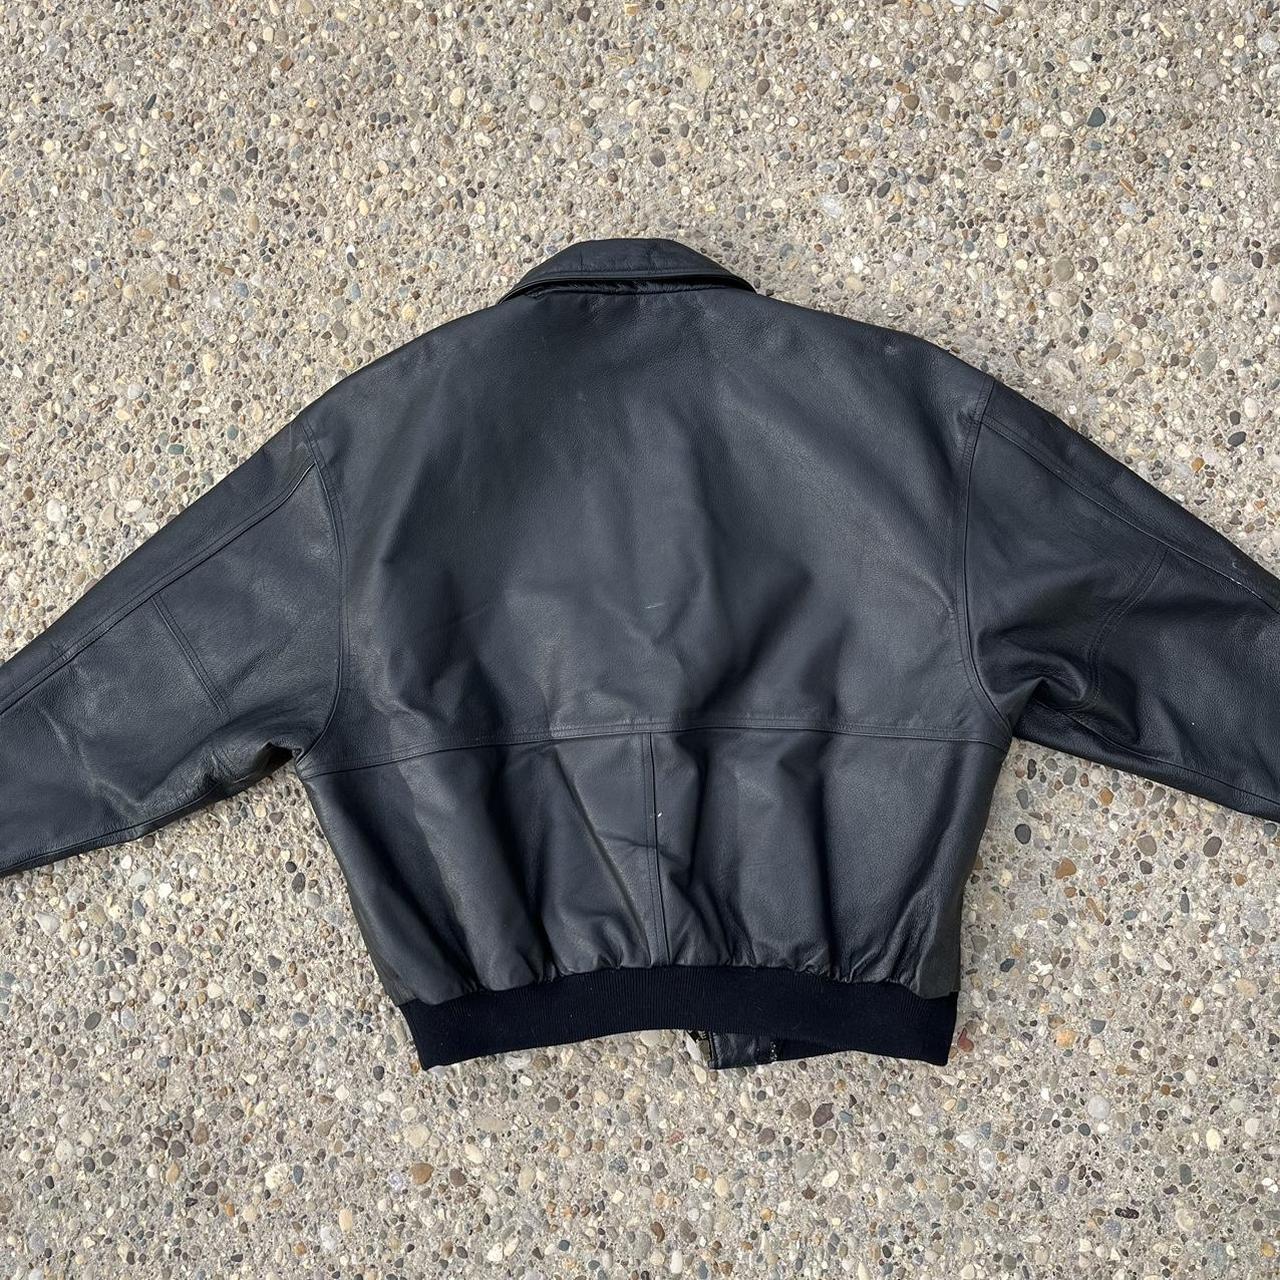 Vintage Mohawk Heavy Y2K Leather jacket workwear -... - Depop